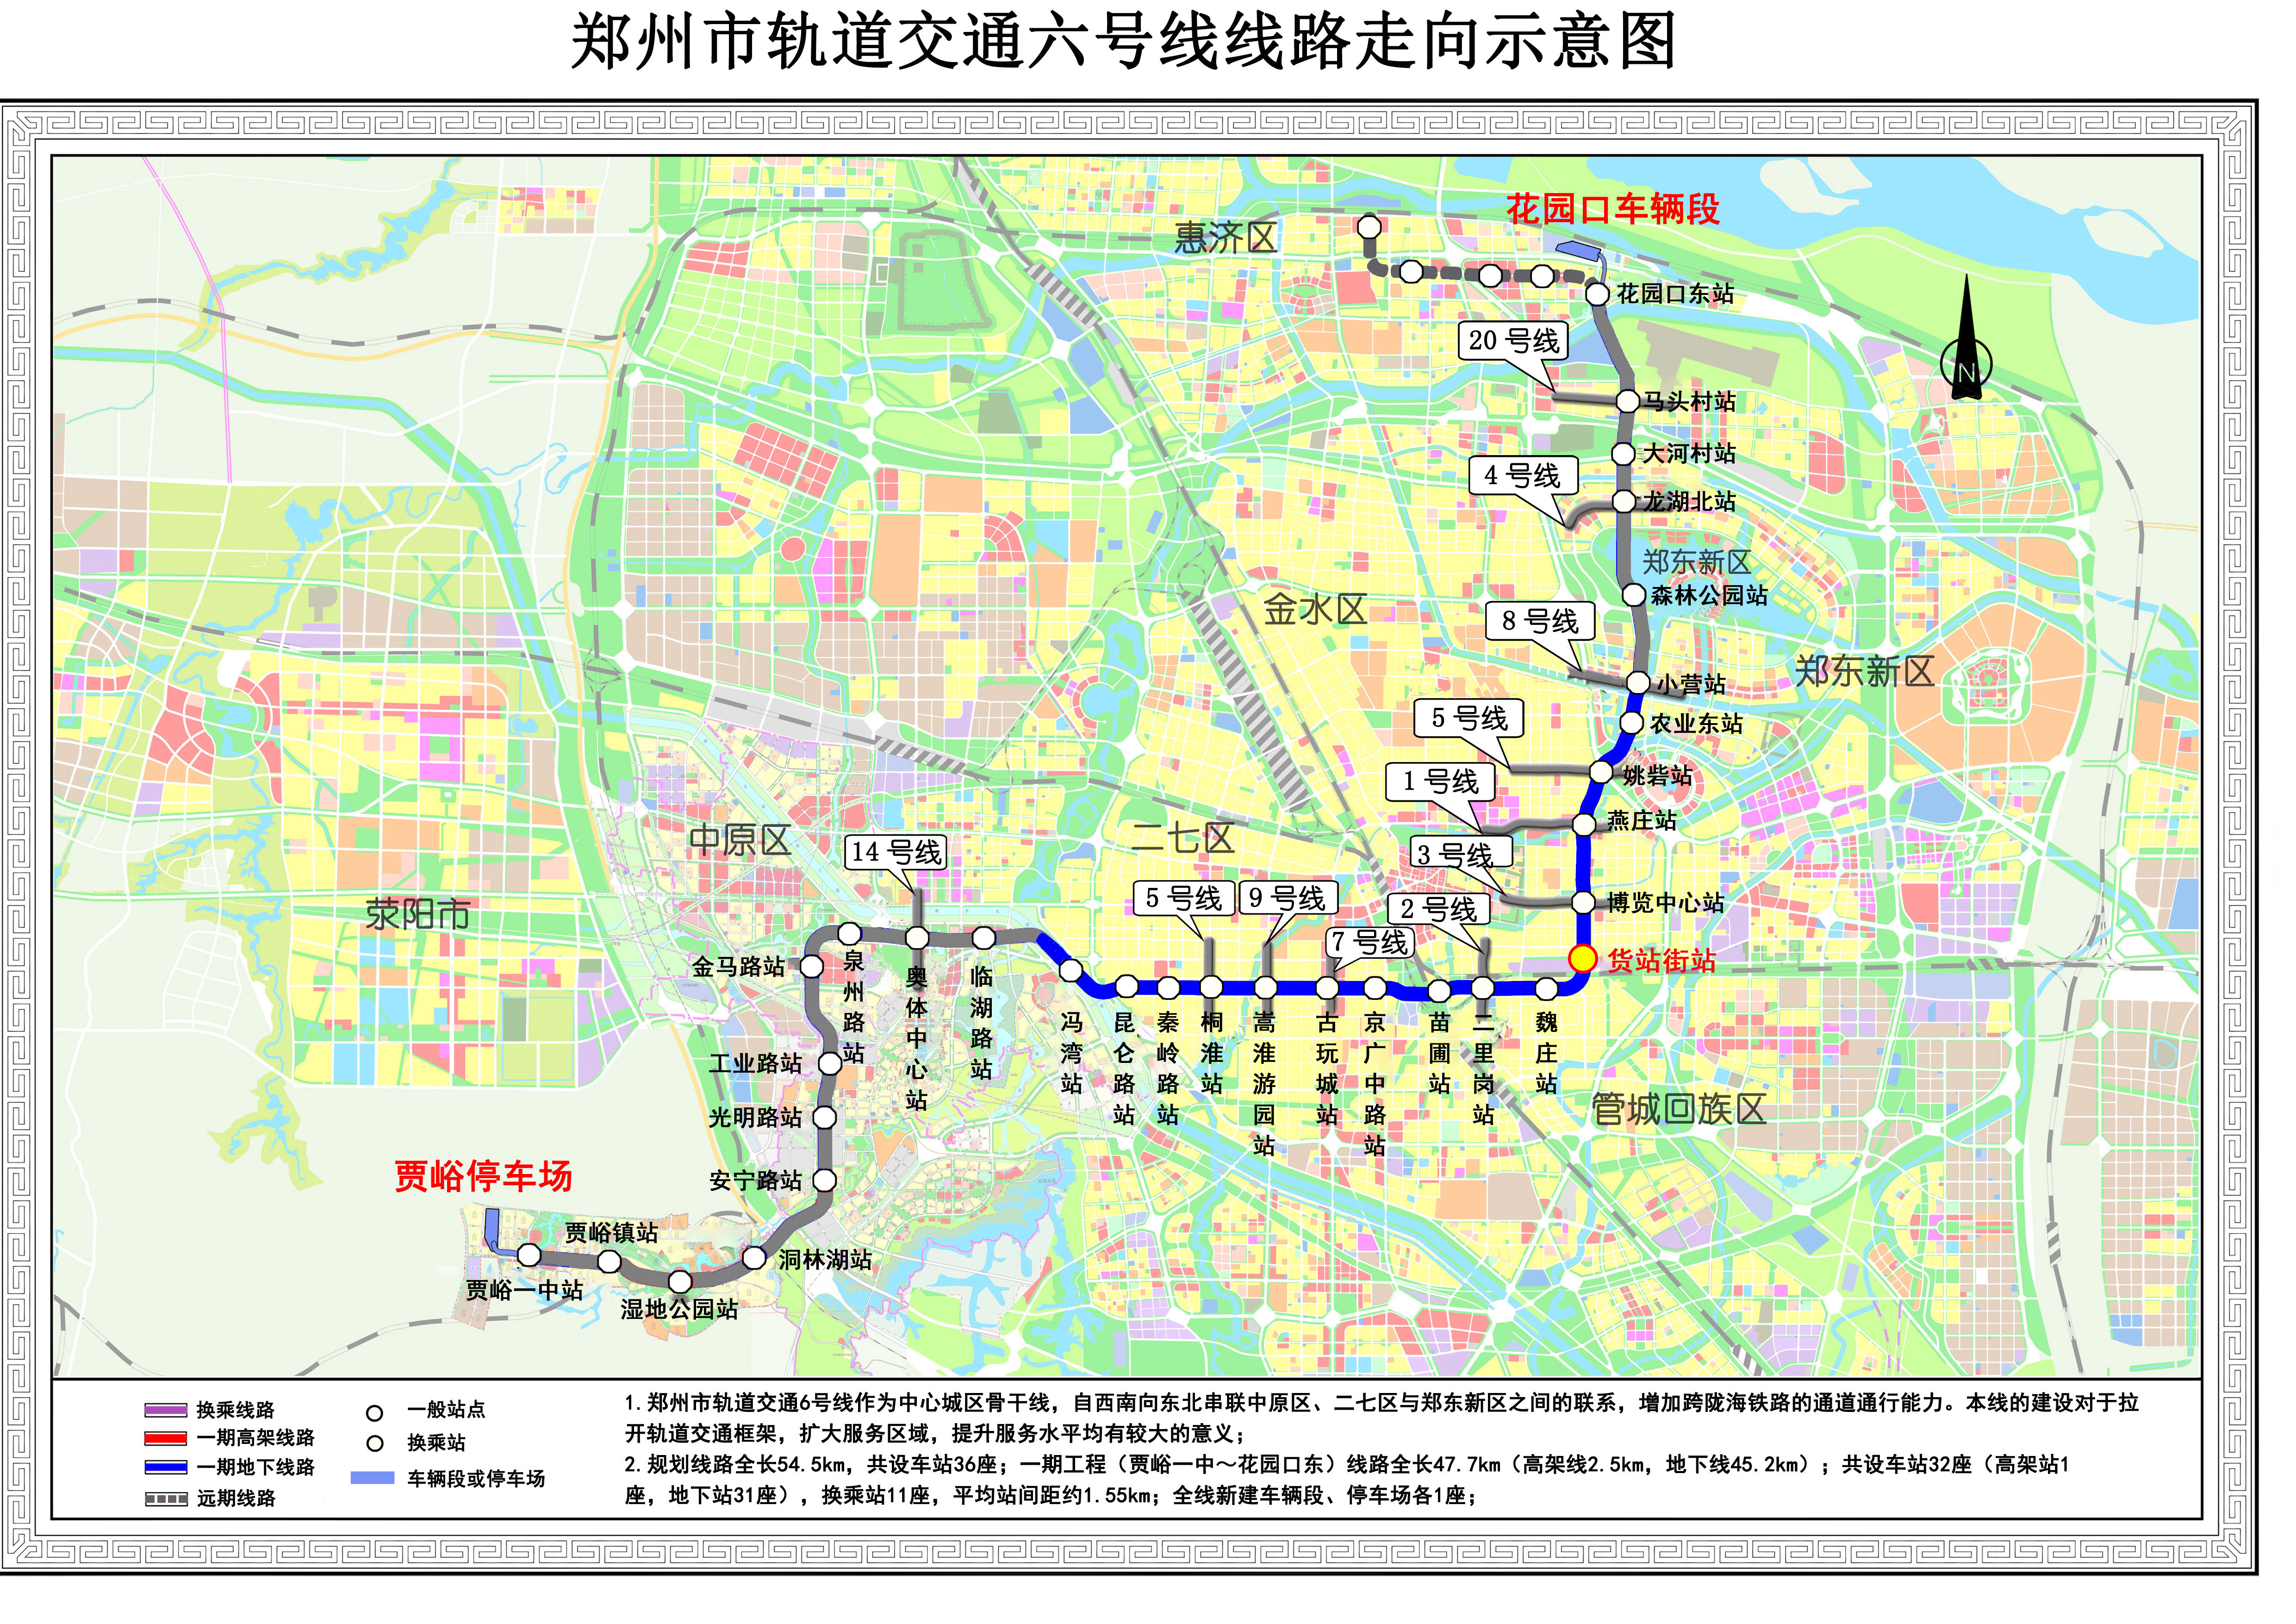 郑州地铁6号线要来啦有望年底开通载客运营